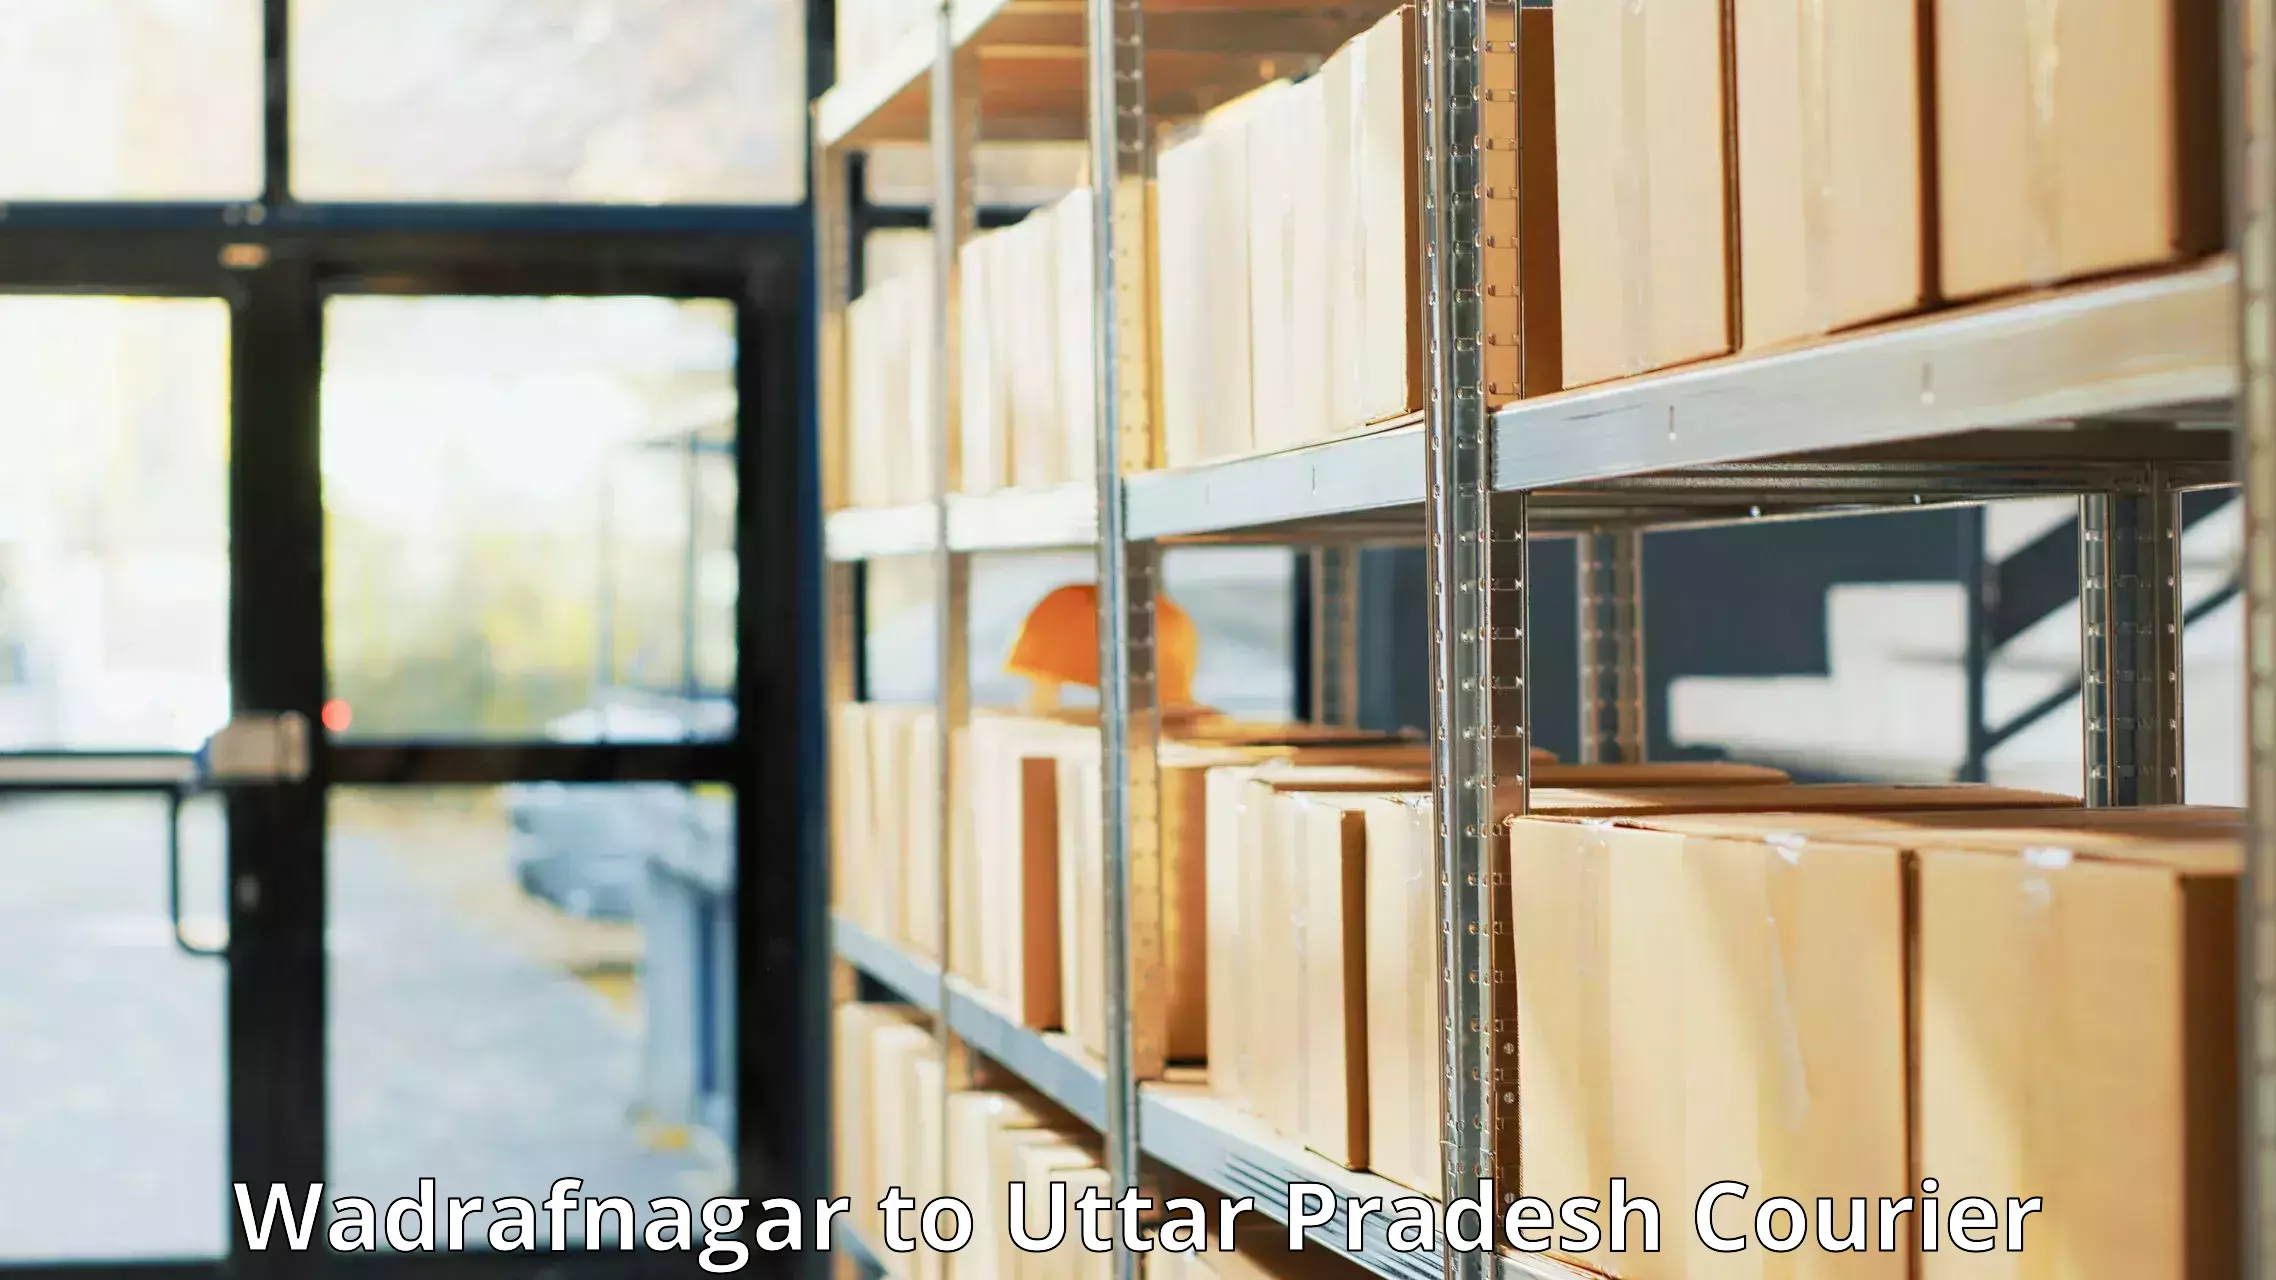 Custom courier packages in Wadrafnagar to Meerut